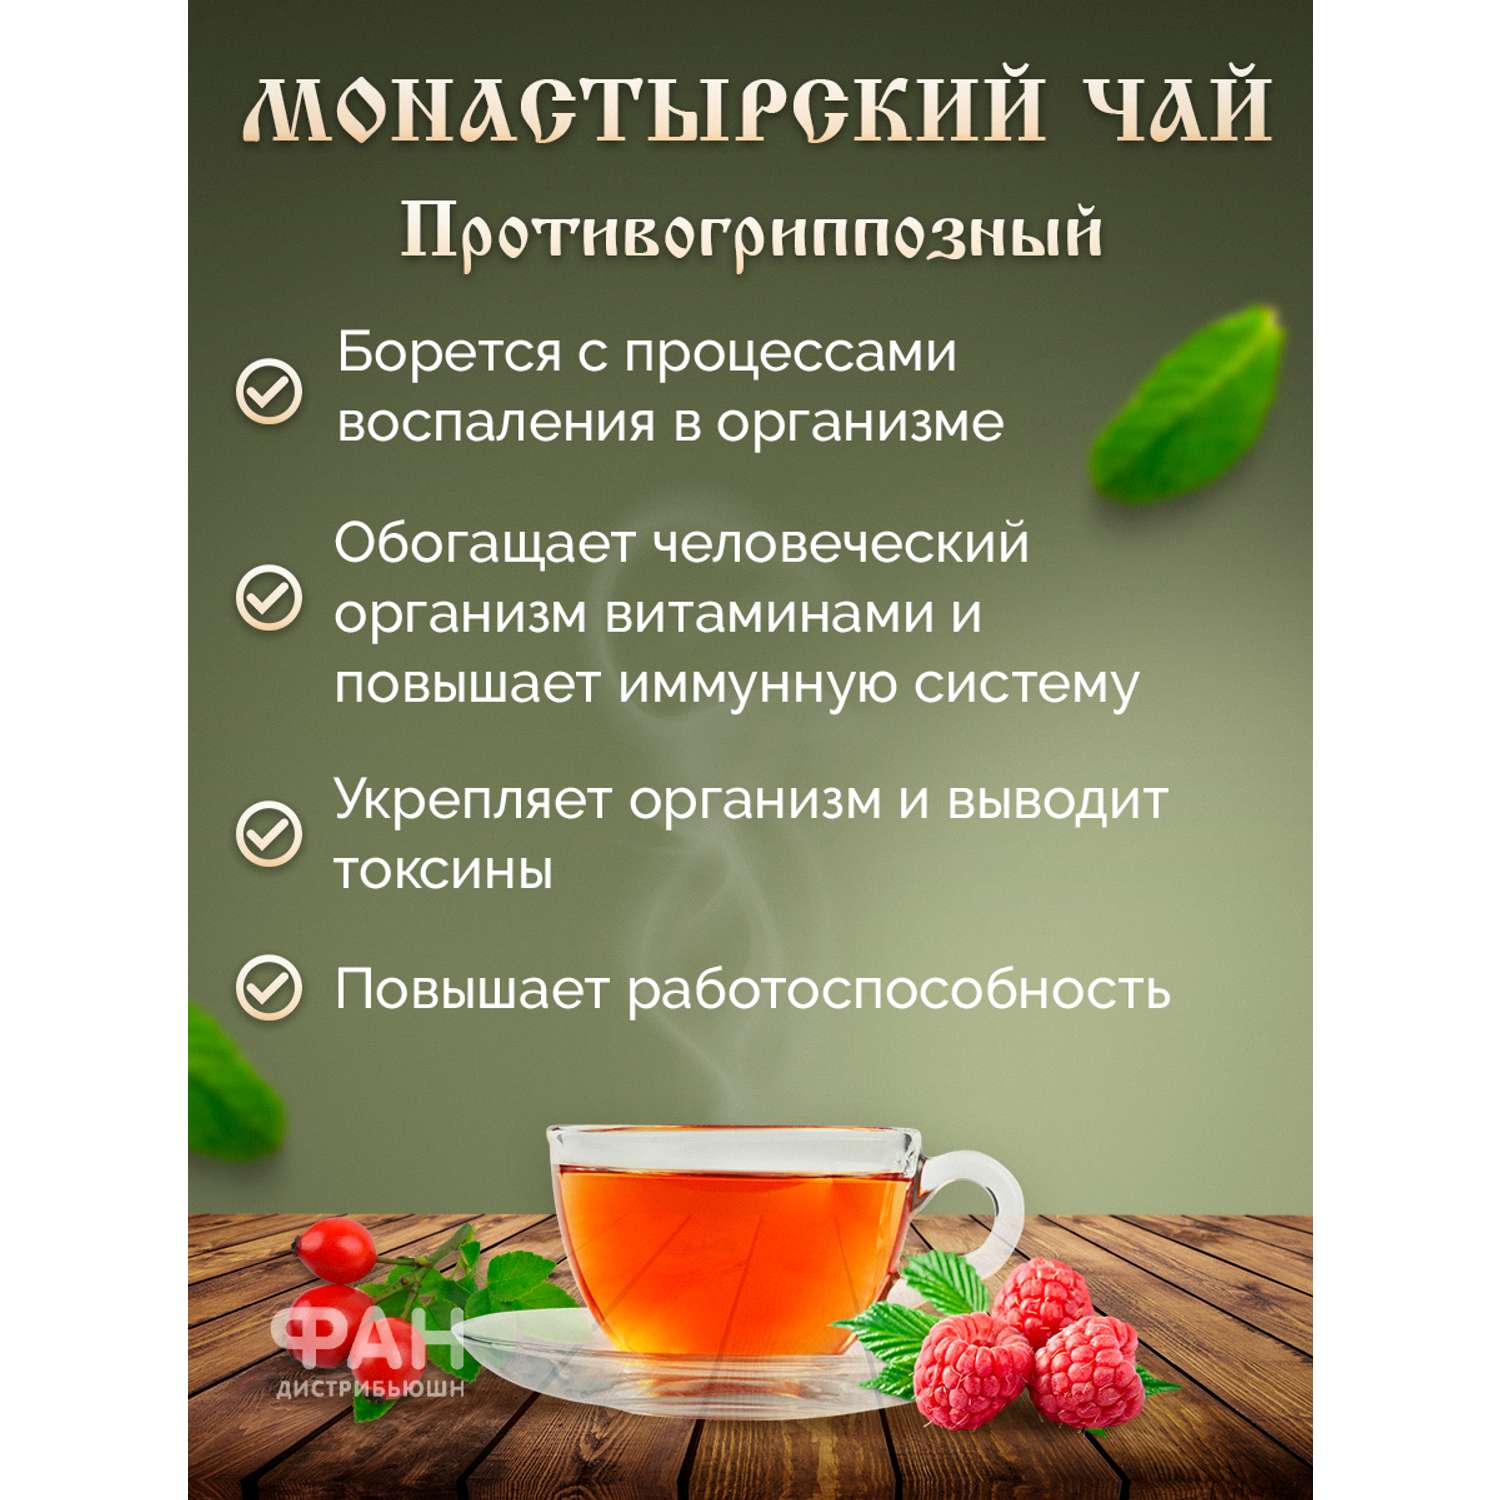 Чай Монастырские травы 9 Противогриппозный 100 гр. - фото 3